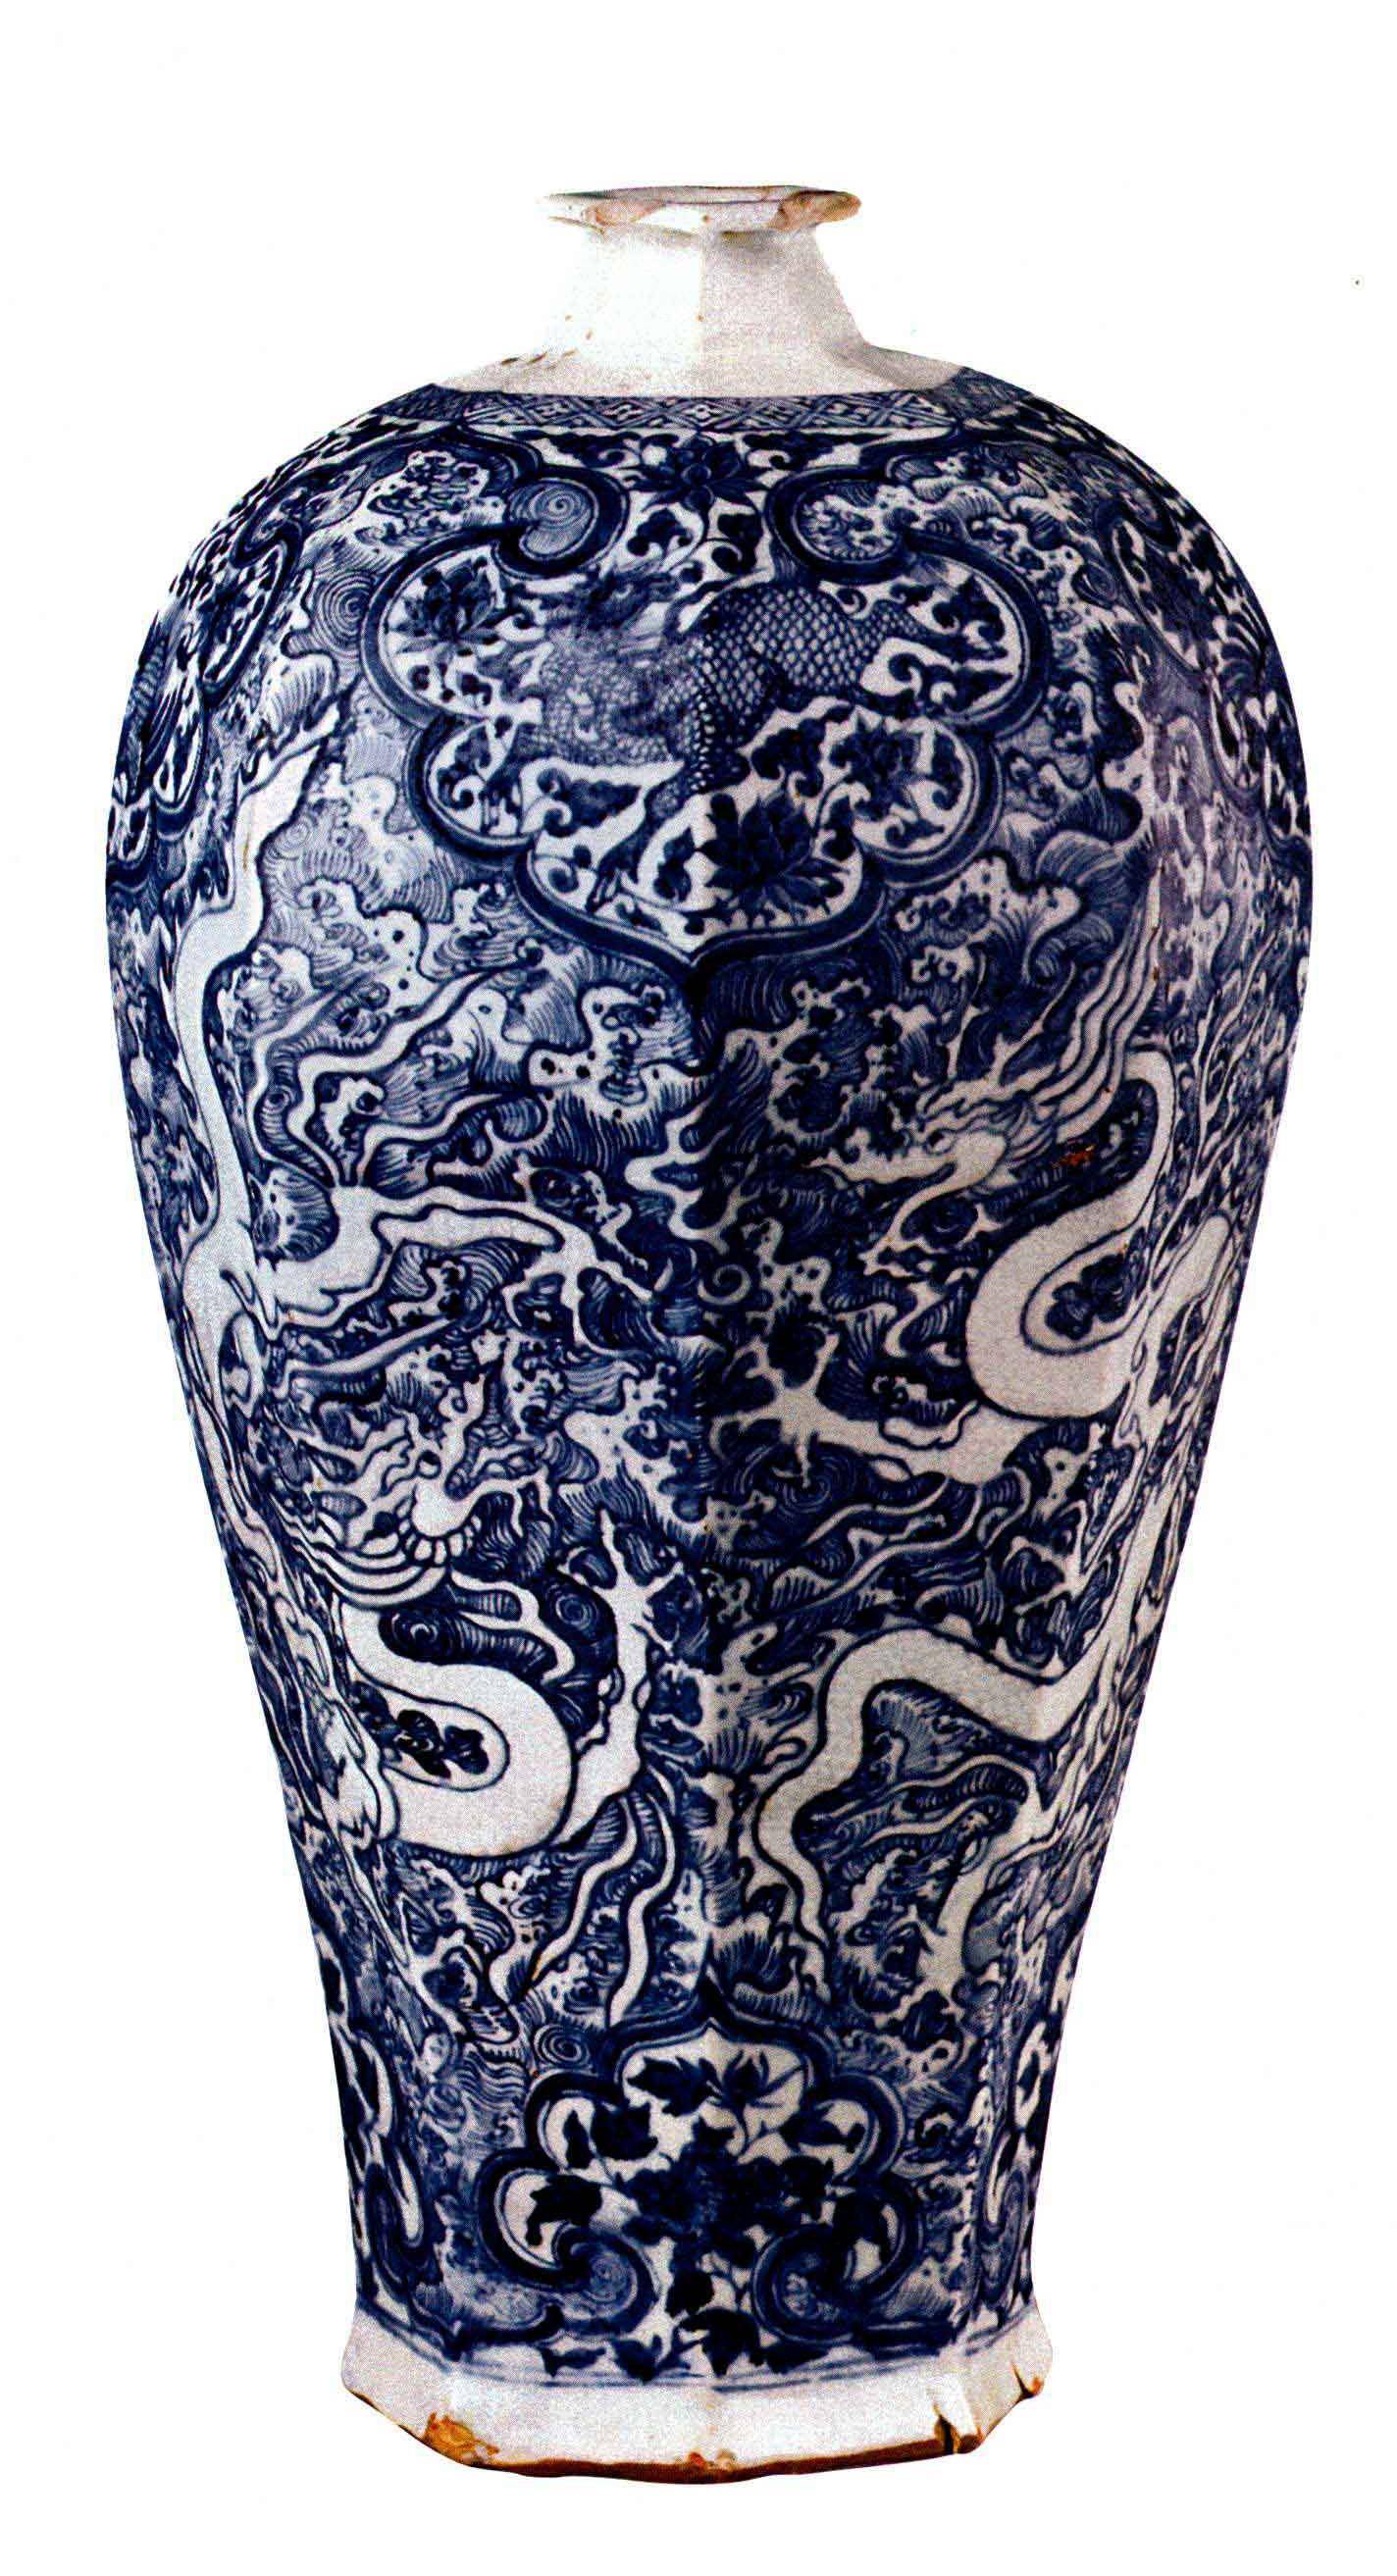 中国陶瓷文化,牡丹纹执壶,元代青花瓷器中的孤品,弥足珍贵